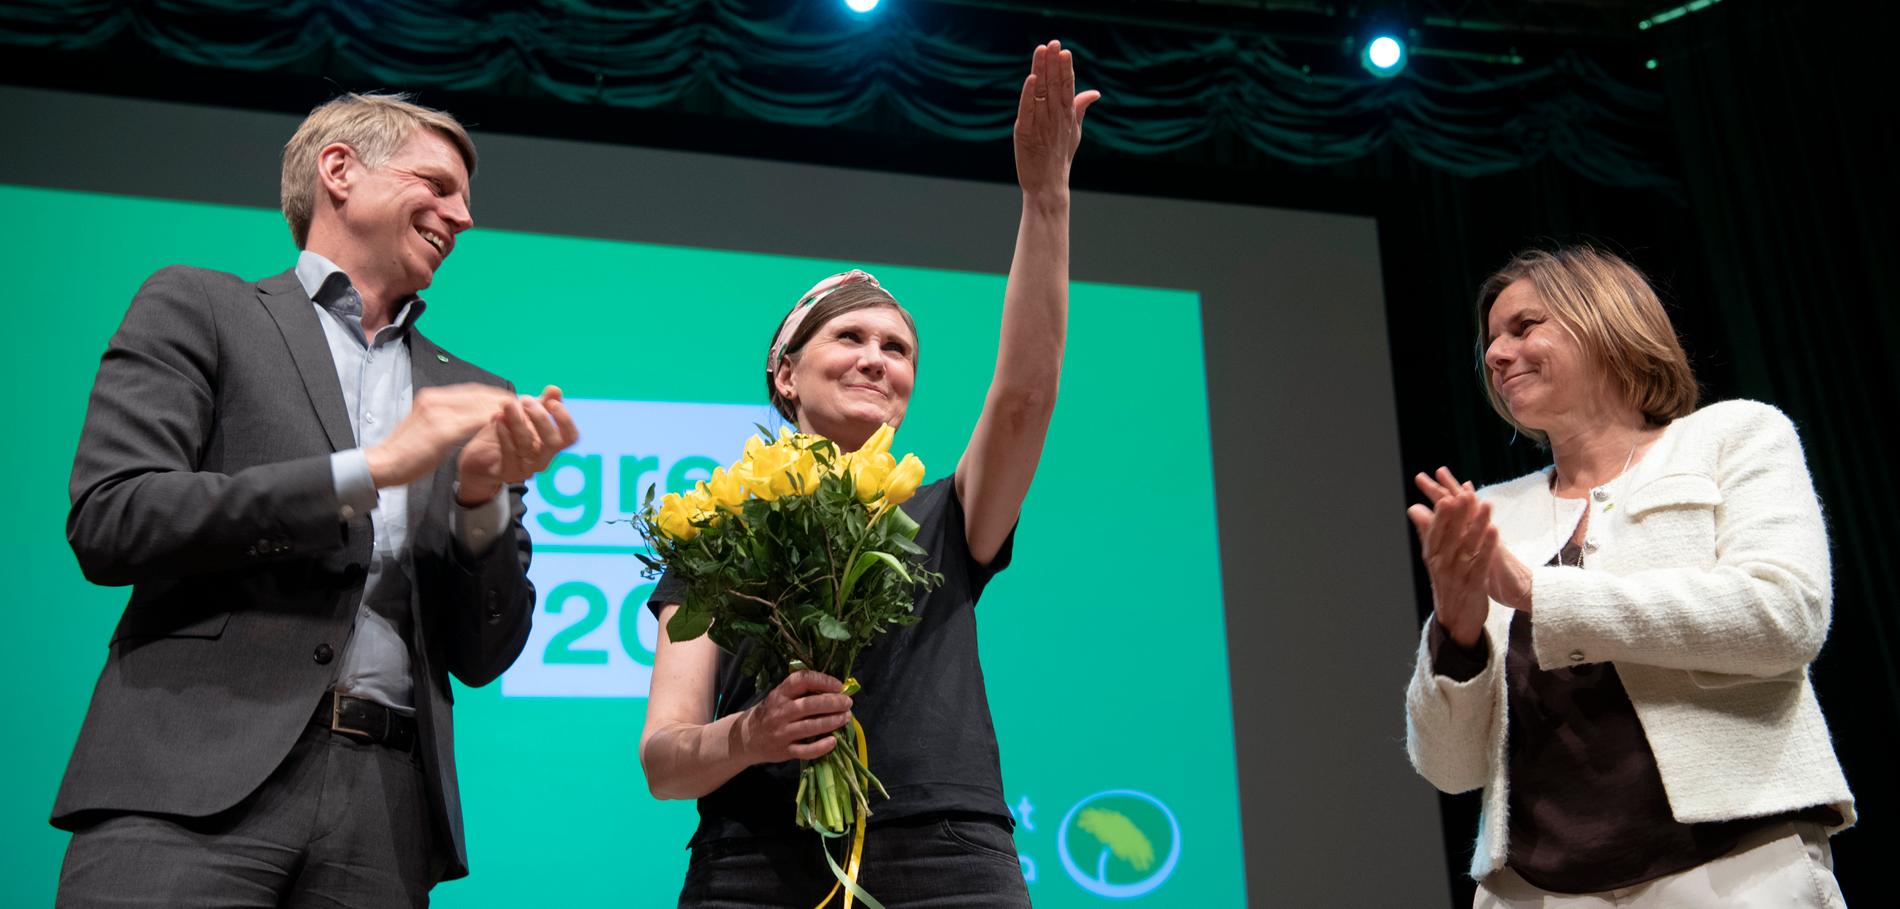 Miljöpartiets partisekreterare Märta Stenevi (i mitten på bilden) ser ut att bli Isabella Lövins efterträdare som partiets kvinnliga språkrör.